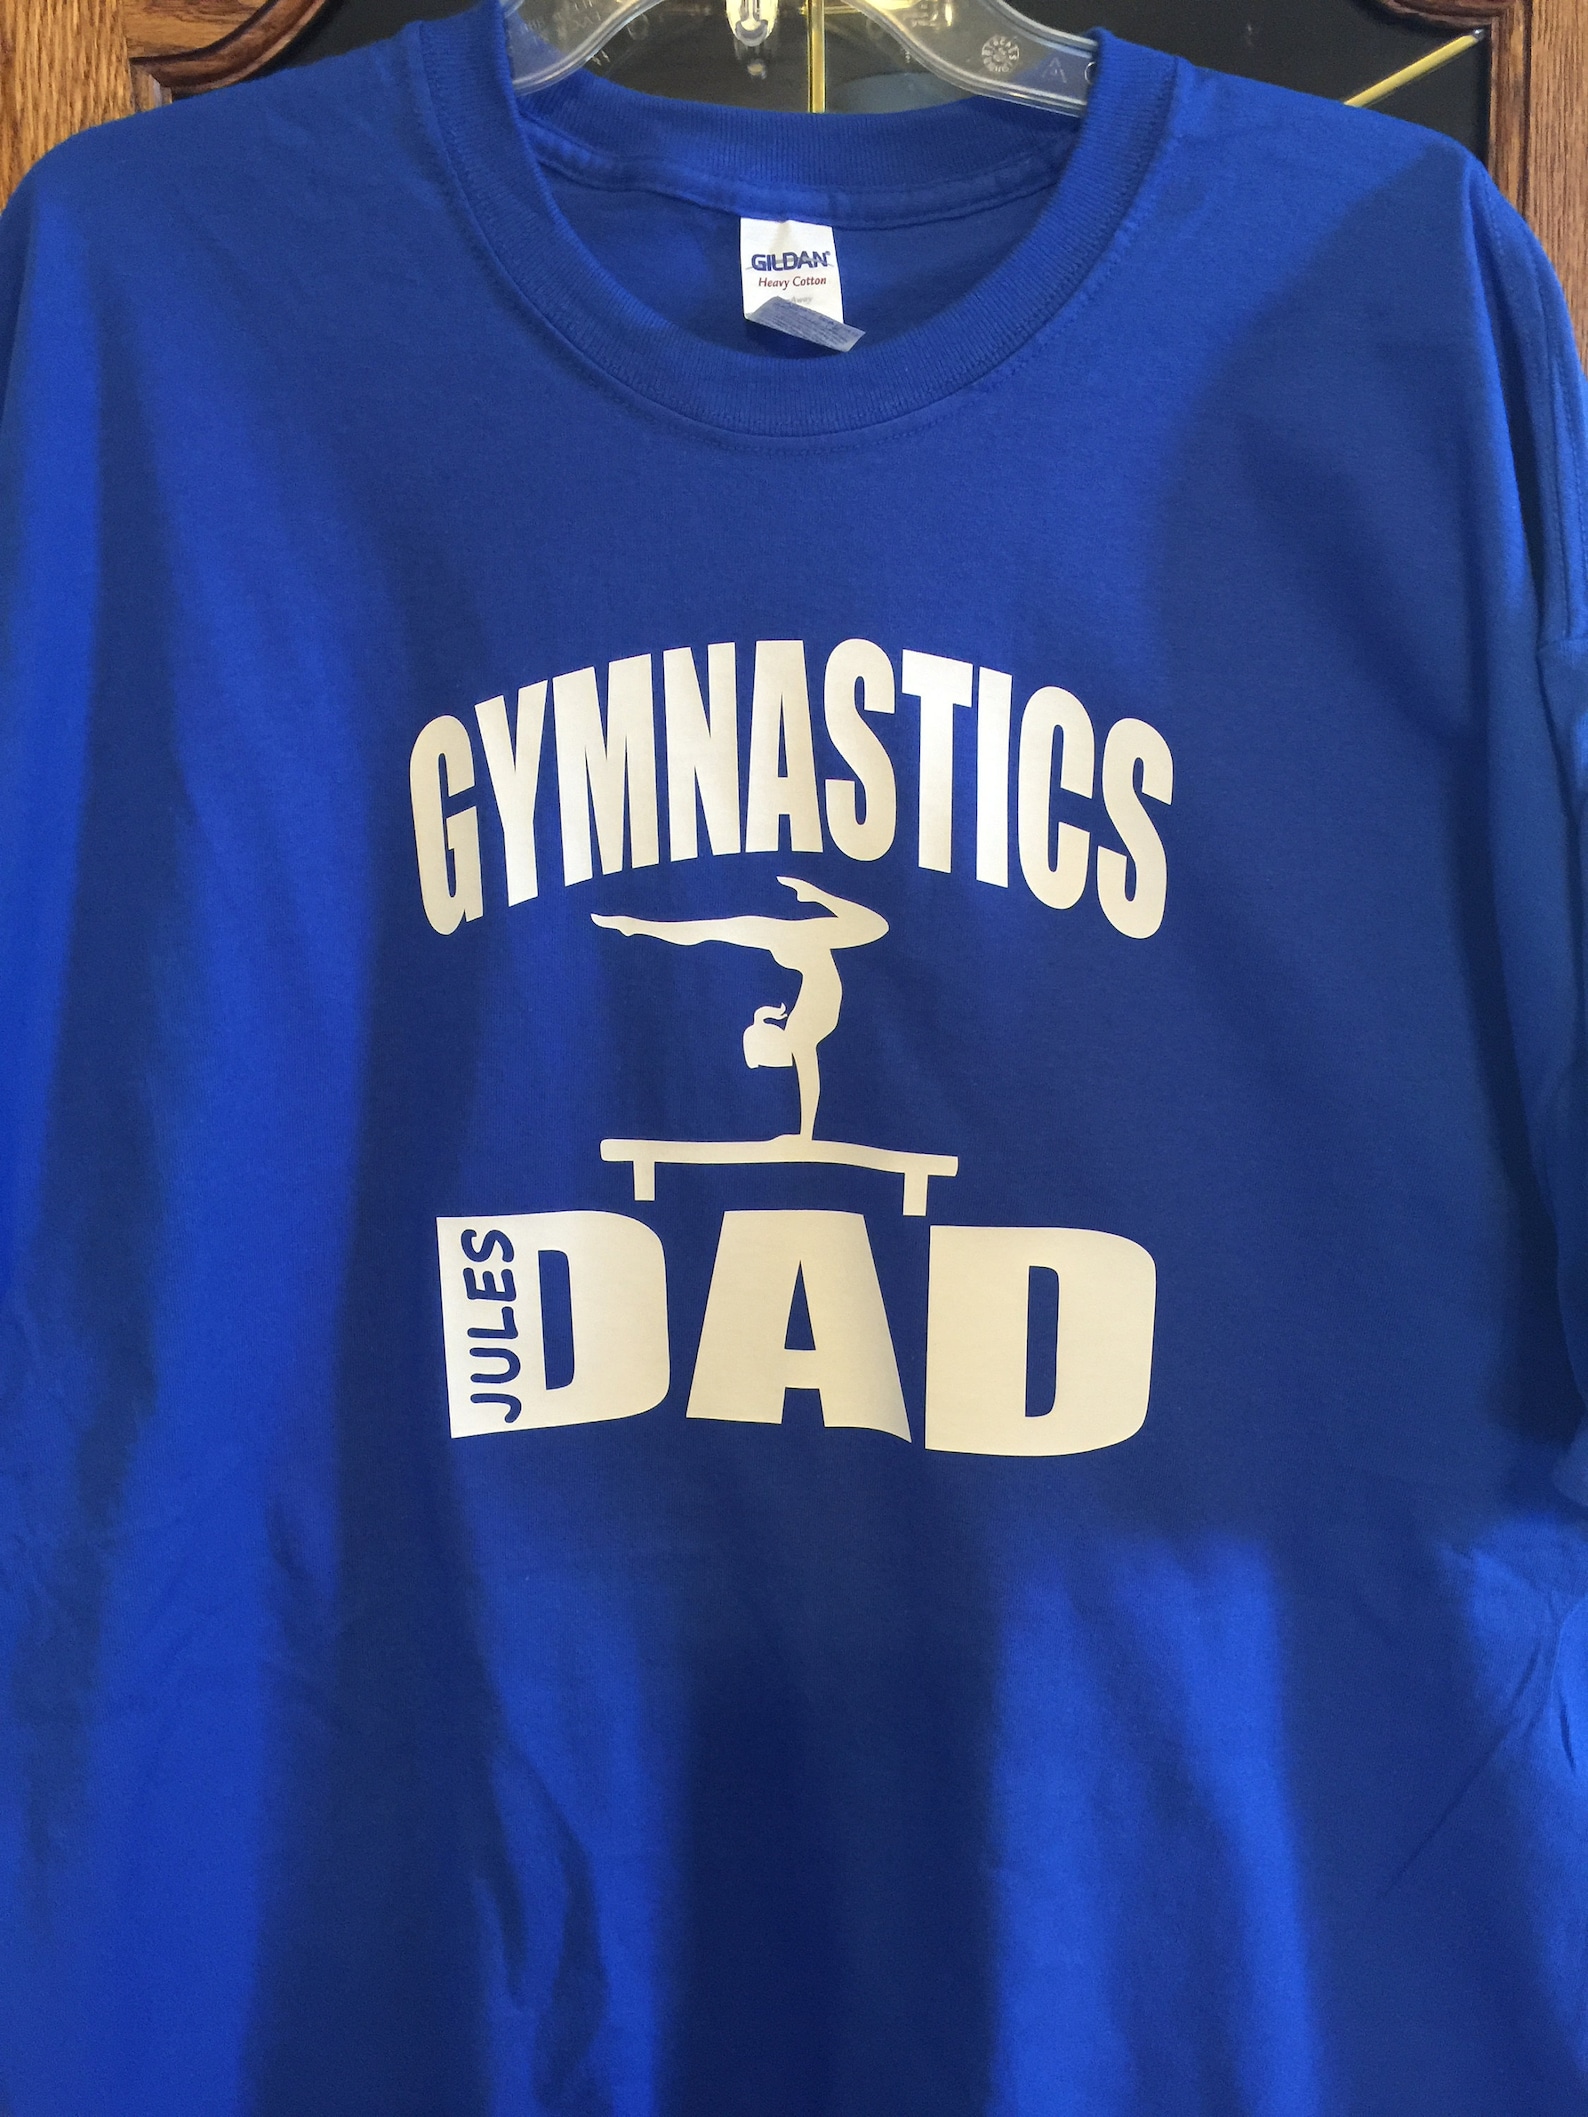 Gymnastics Dad Shirt Personalized Gymnastics Dad Shirt Gymnast Etsy